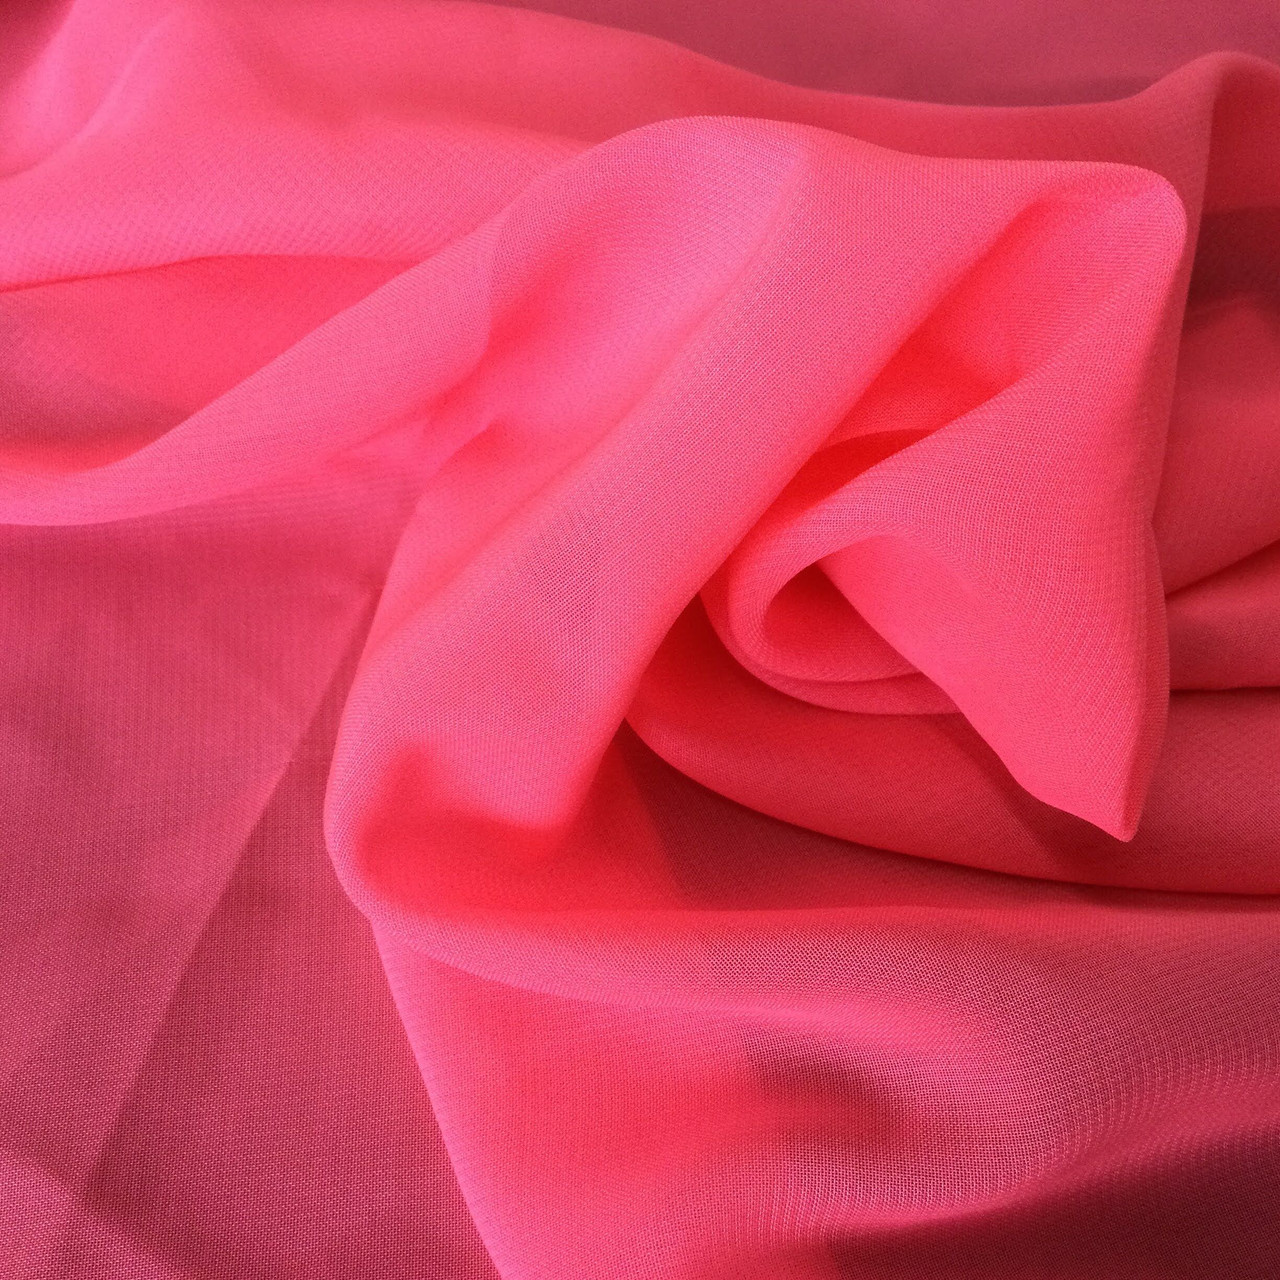 UV Glow Neon Pink Mesh Fabric